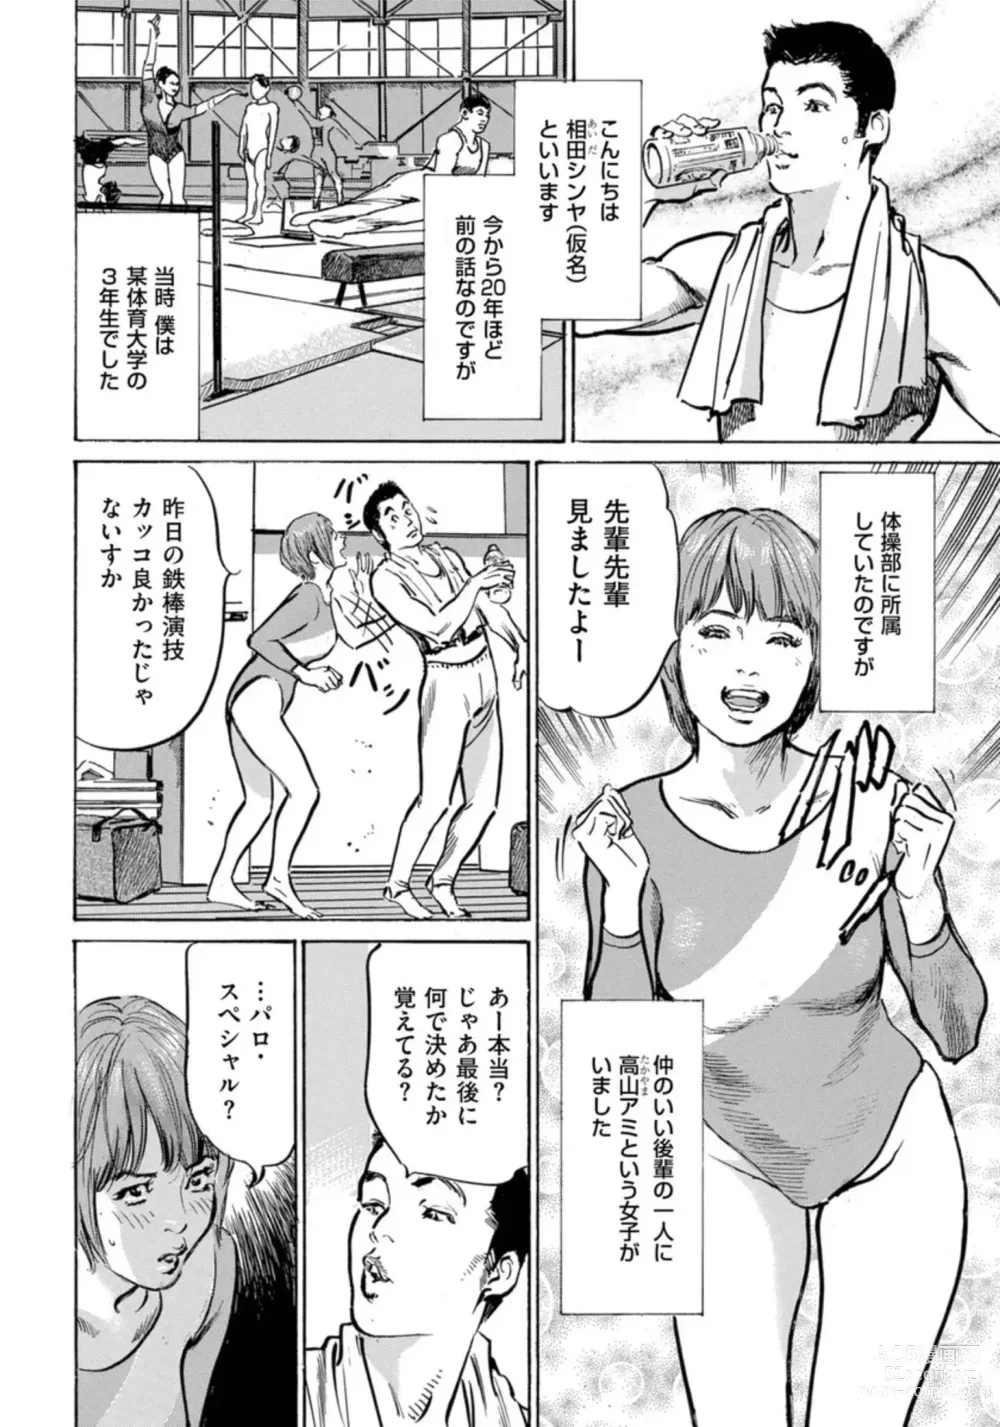 Page 3 of manga Zutto Himitsu ni Shiteita Ano Koto Zenbu Oshiemasu 14 episodes